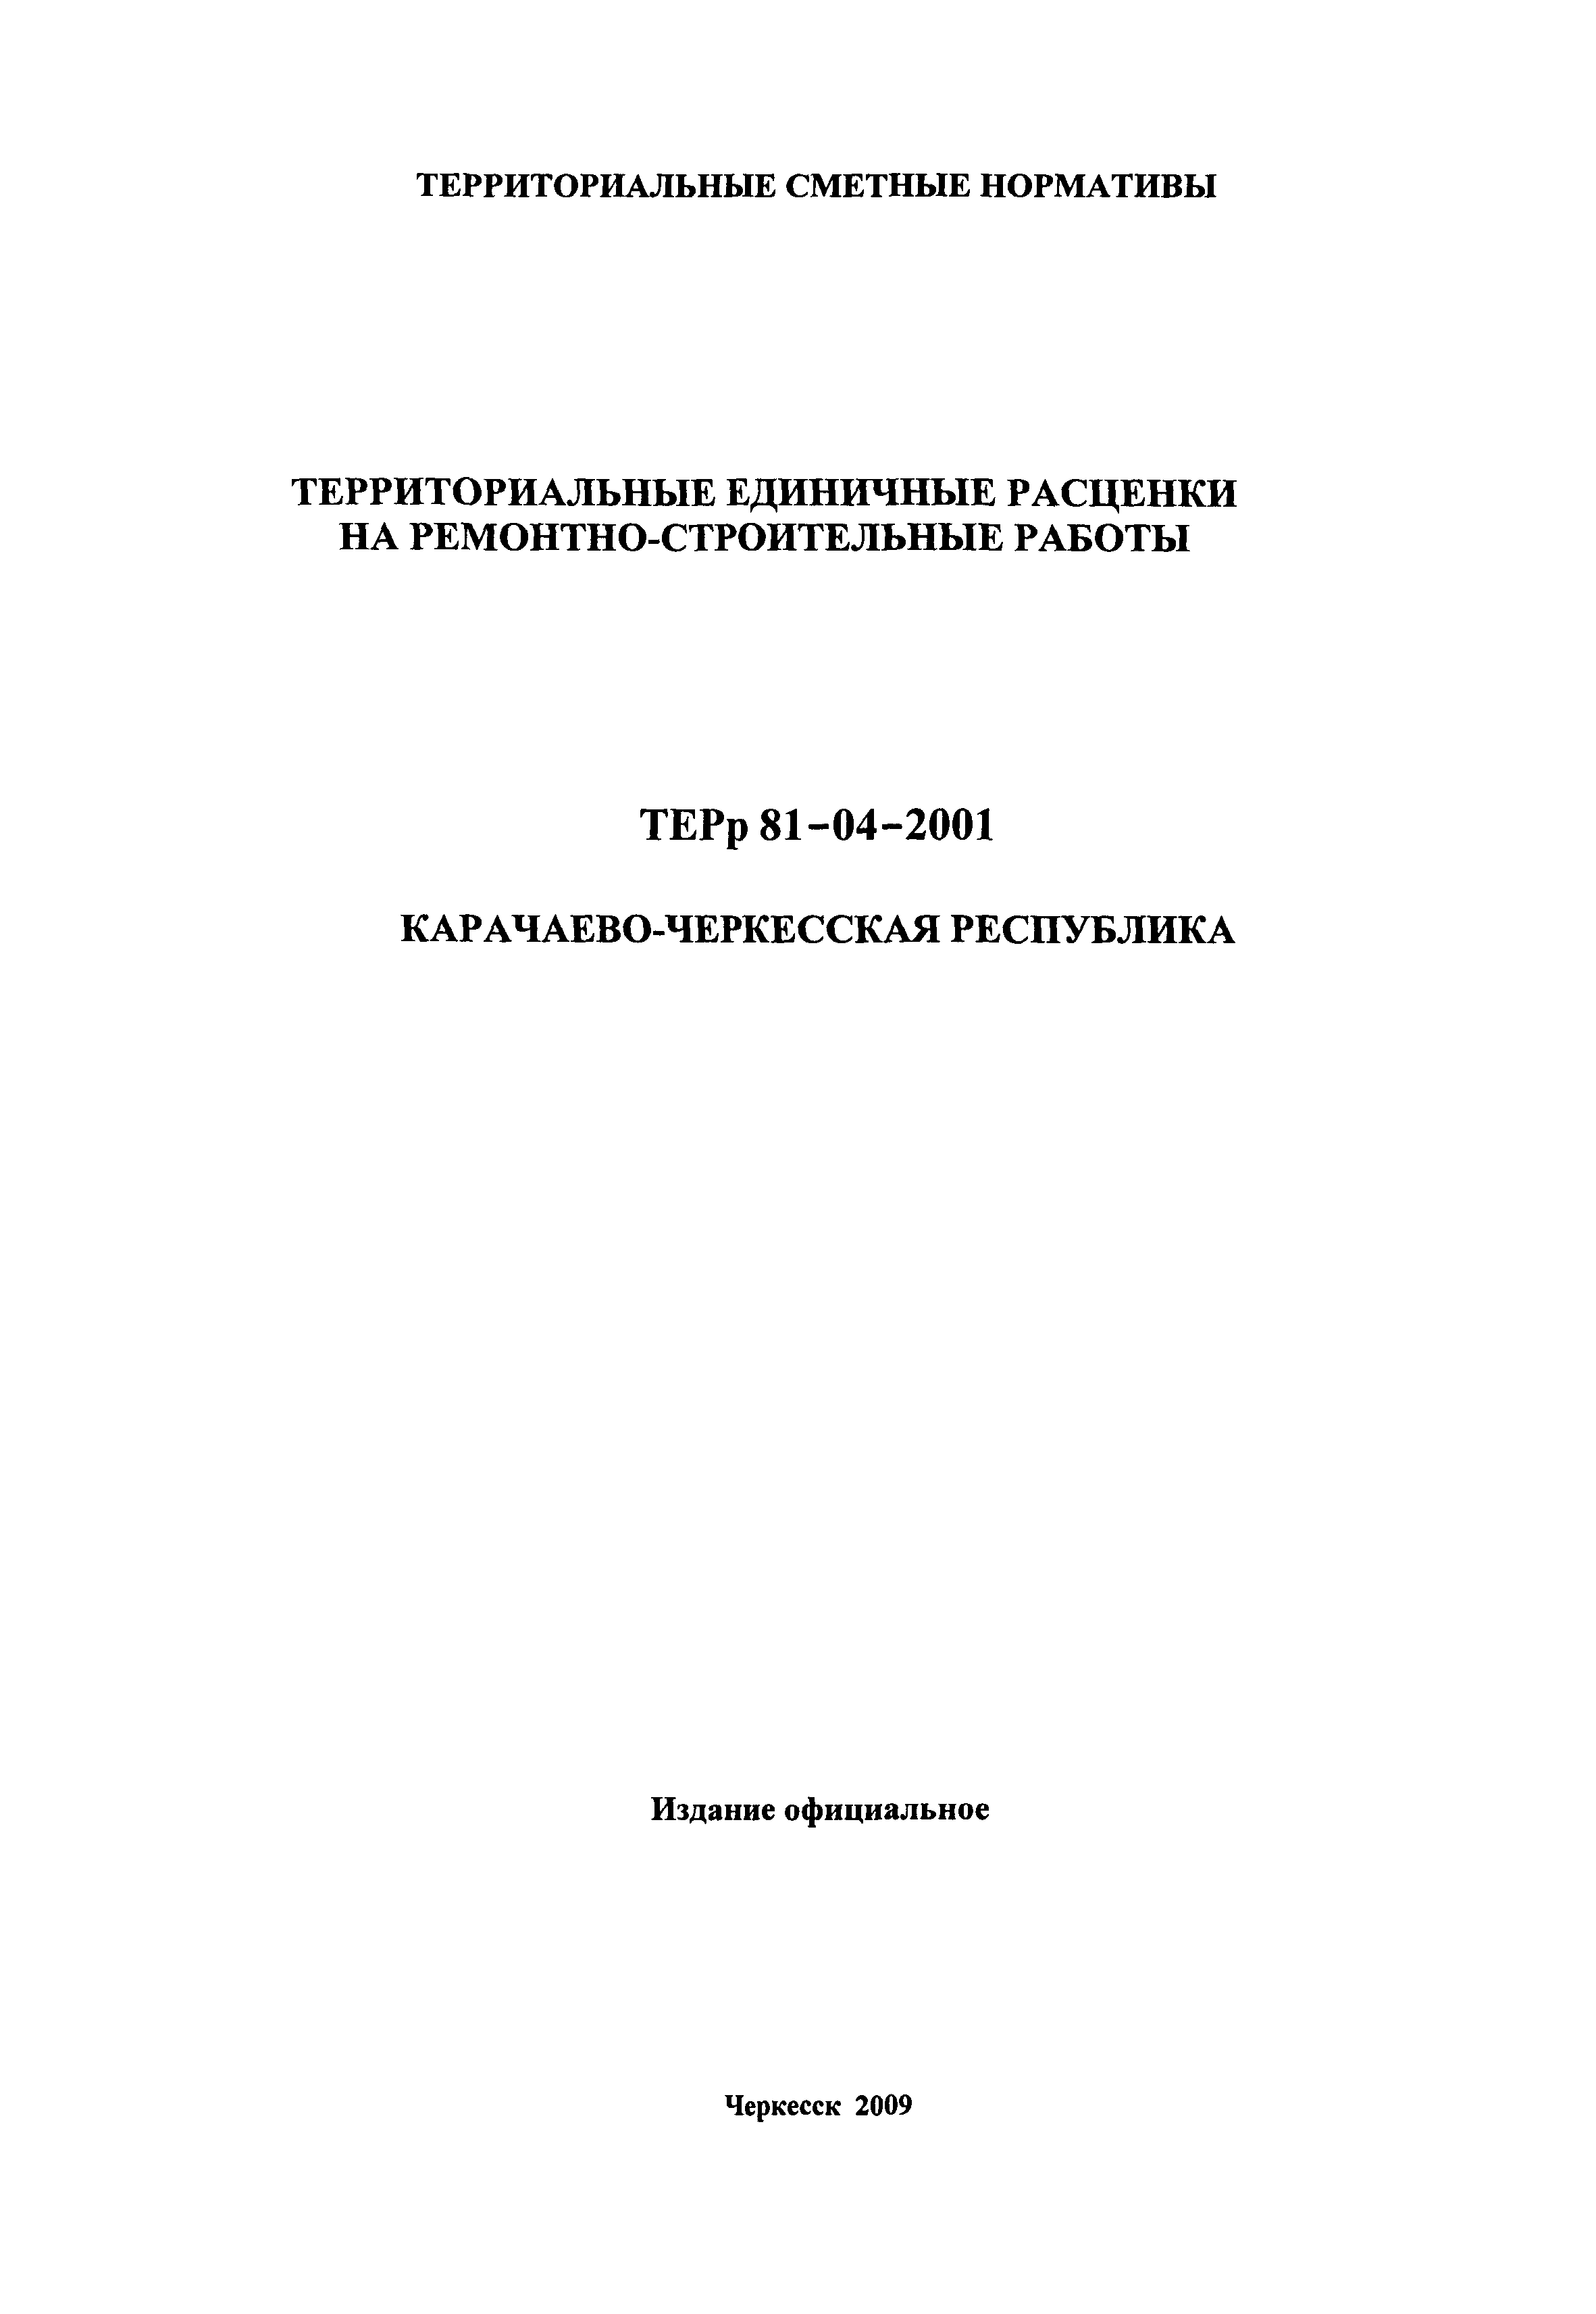 ТЕРр Карачаево-Черкесская Республика 2001-52